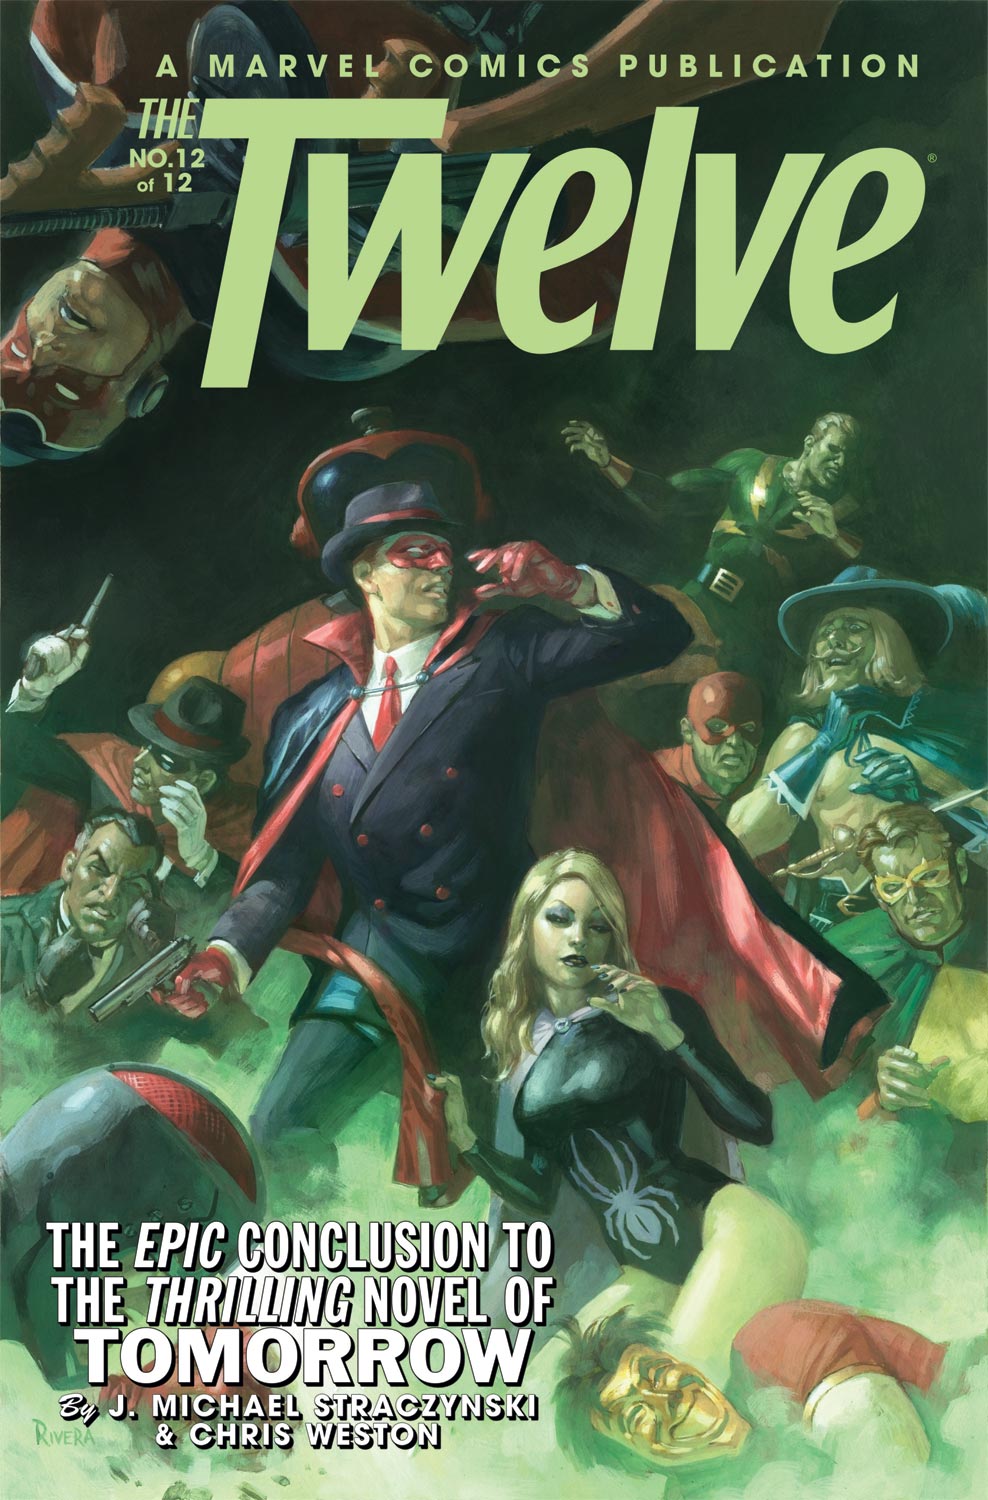 The twelve comic